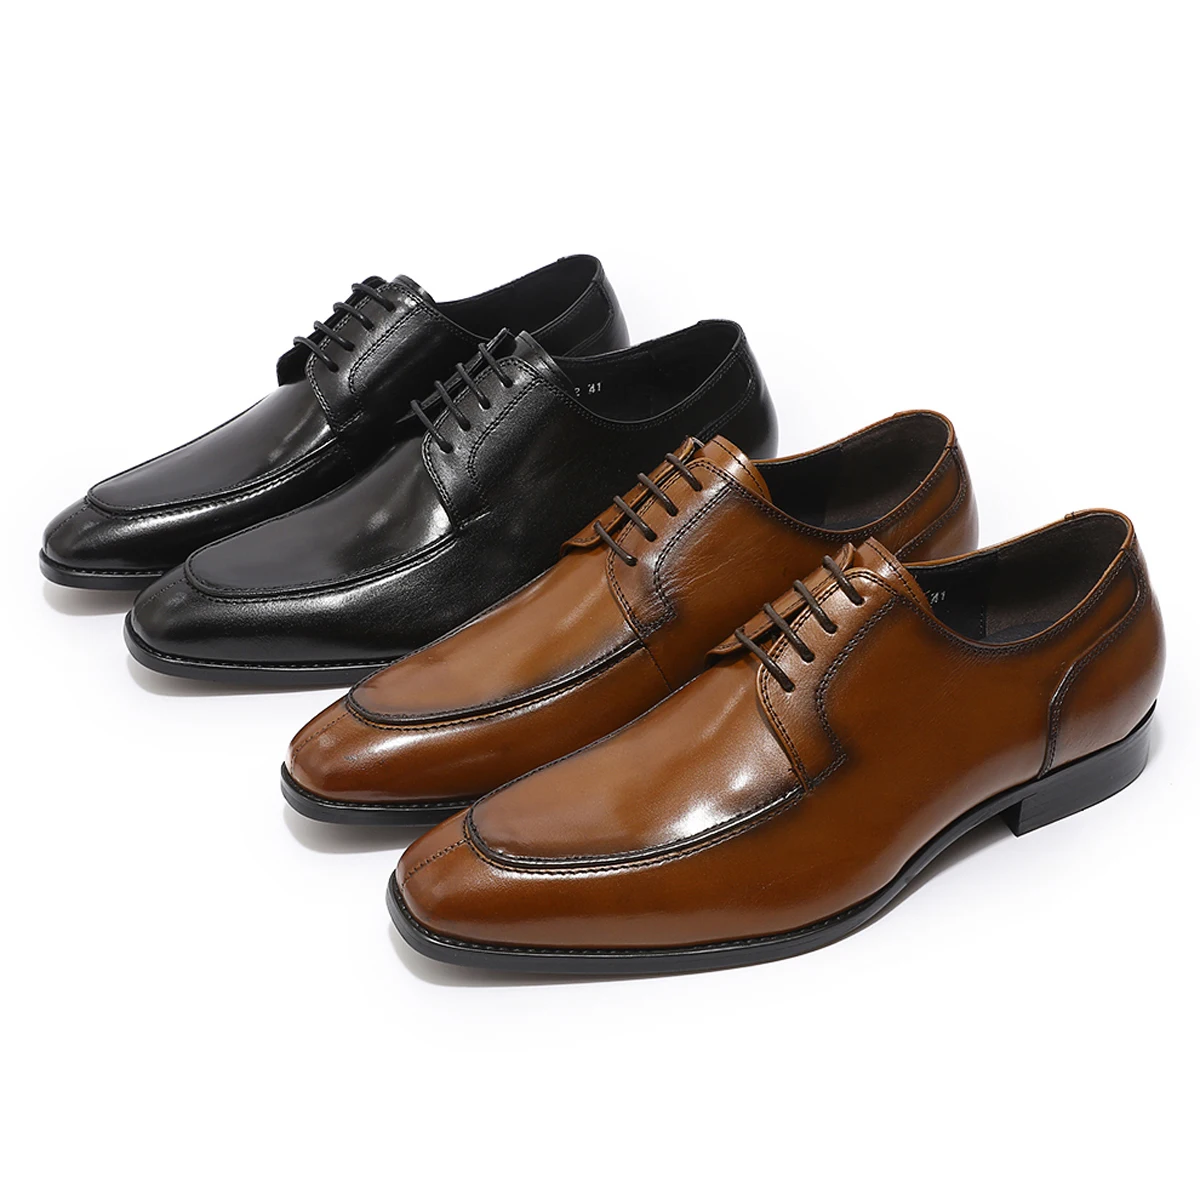 

Мужские туфли-оксфорды из натуральной кожи, весенние туфли ручной работы с квадратным носком, слипоны, повседневные британские туфли для мужчин, деловые повседневные ботинки